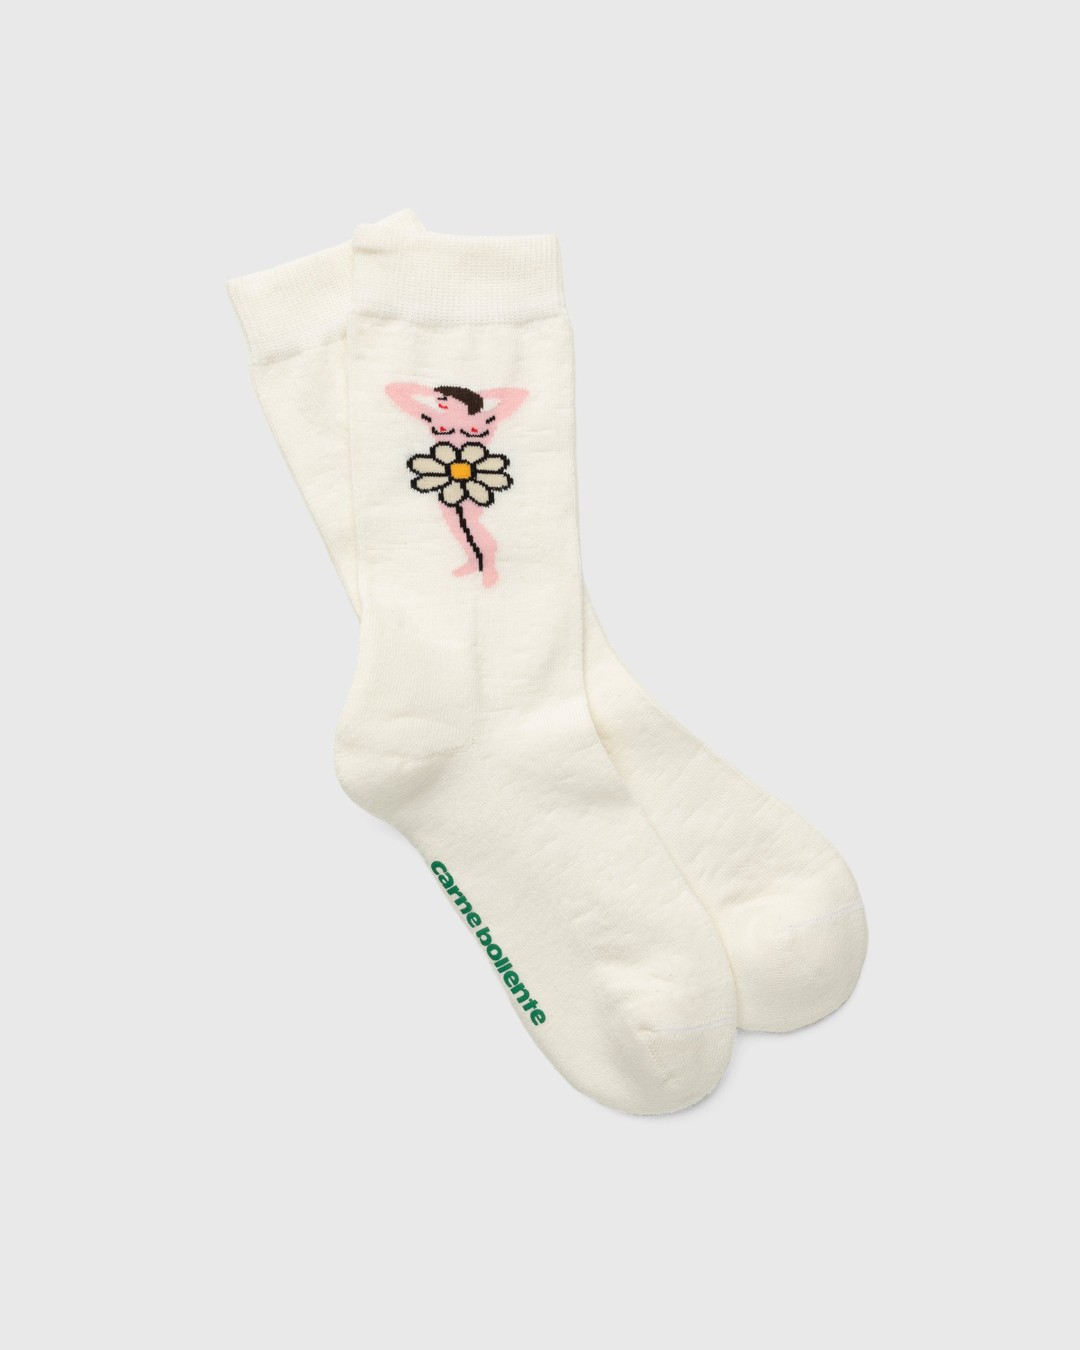 Carne Bollente – Daisies of Desire Socks White - Socks - White - Image 1